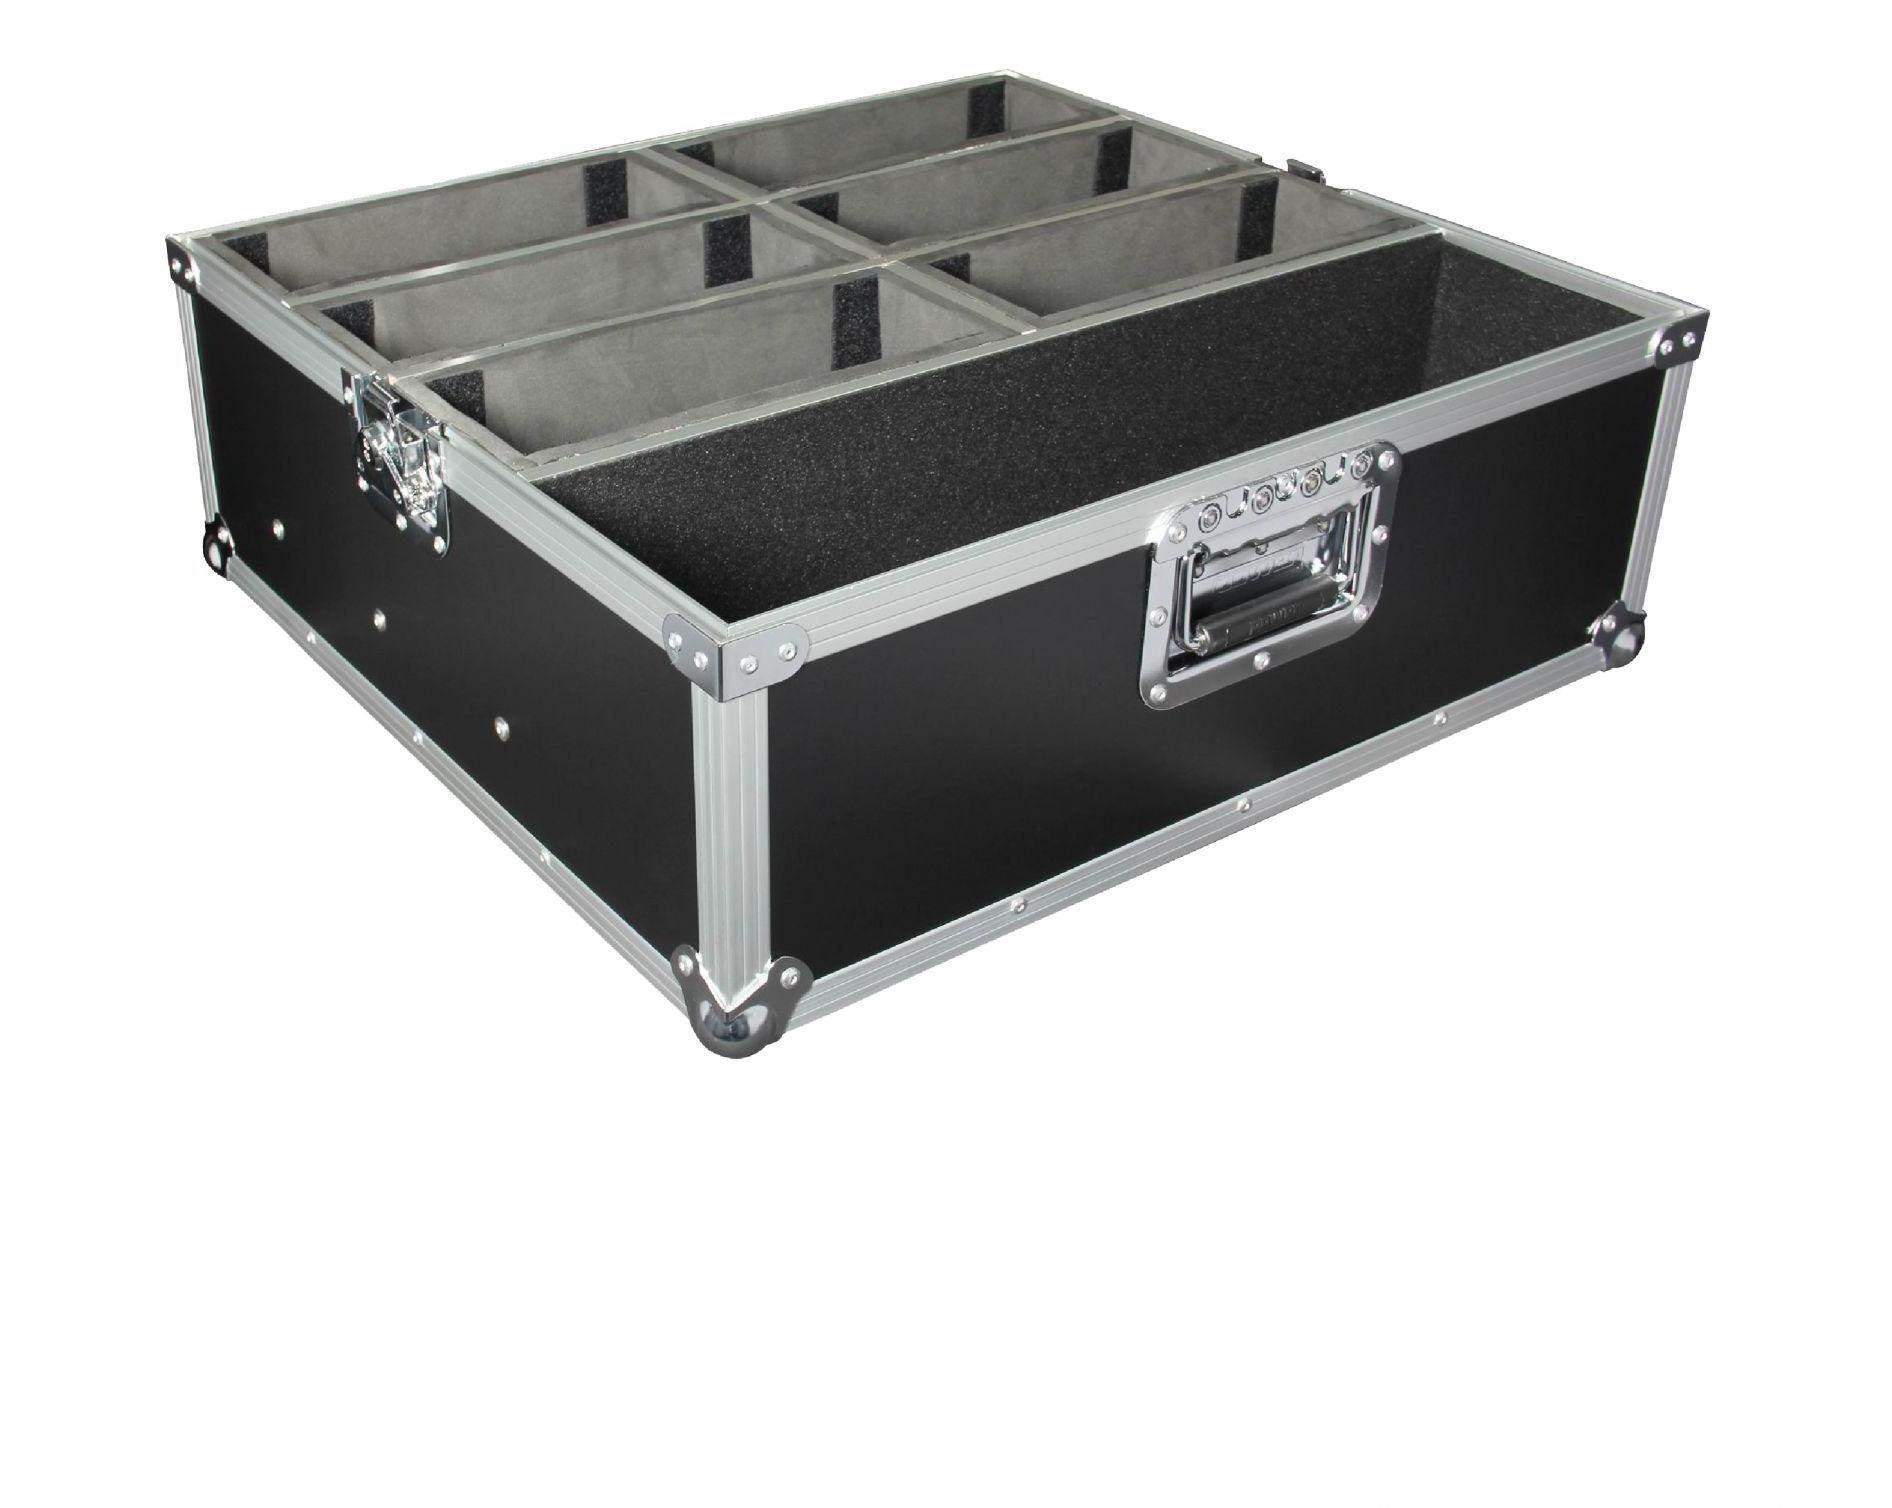 Bag & flightcase for lighting equipment Power acoustics FlightCase 6 Par Slim